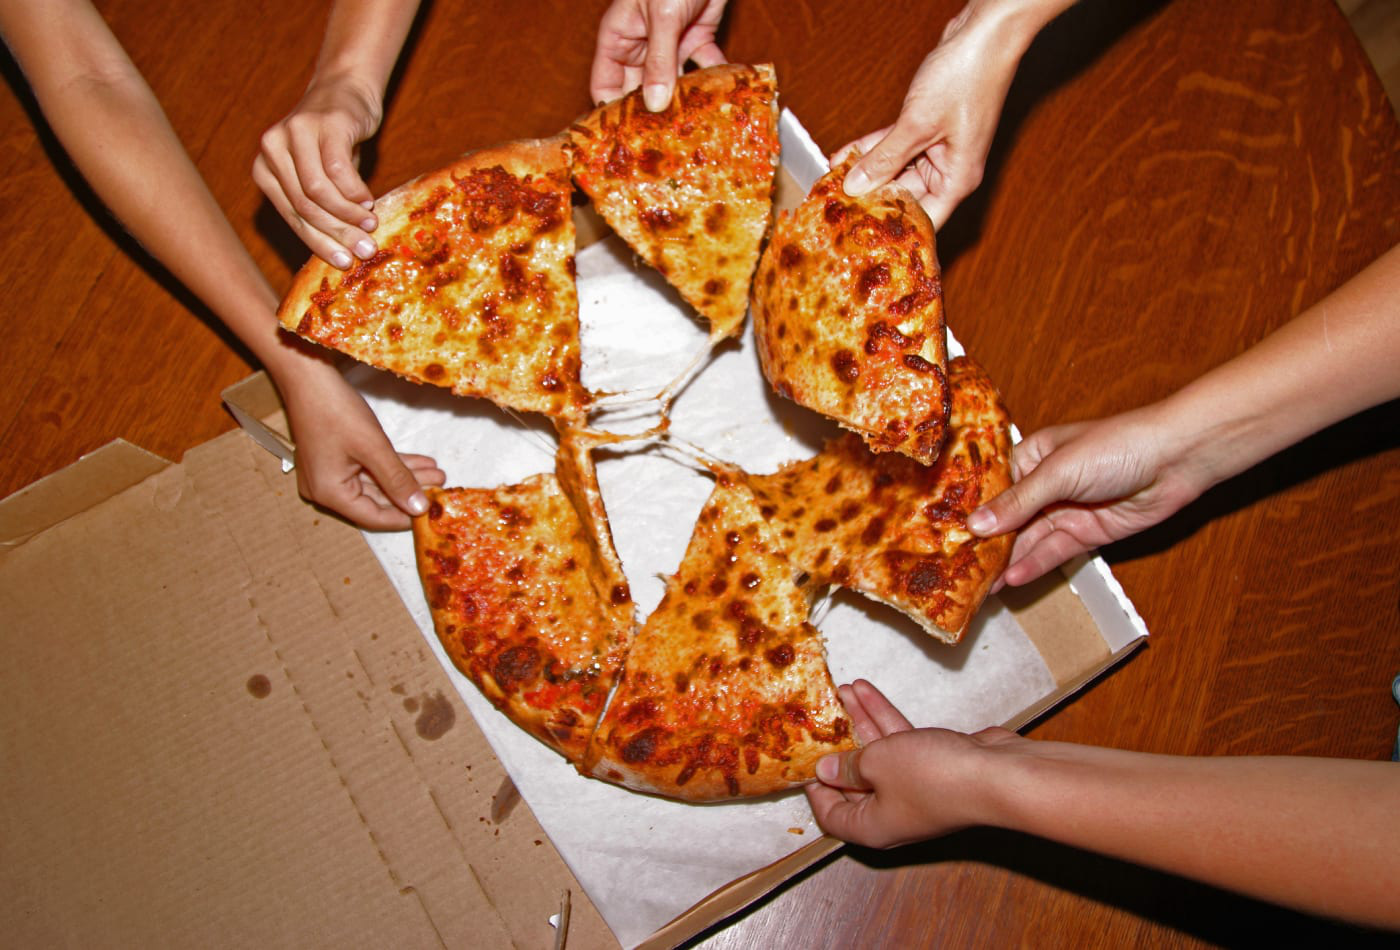 Quy tắc 2 bánh pizza và họp trong im lặng – những bí kíp giúp Jeff Bezos trở thành người giàu nhất hành tinh - Ảnh 1.